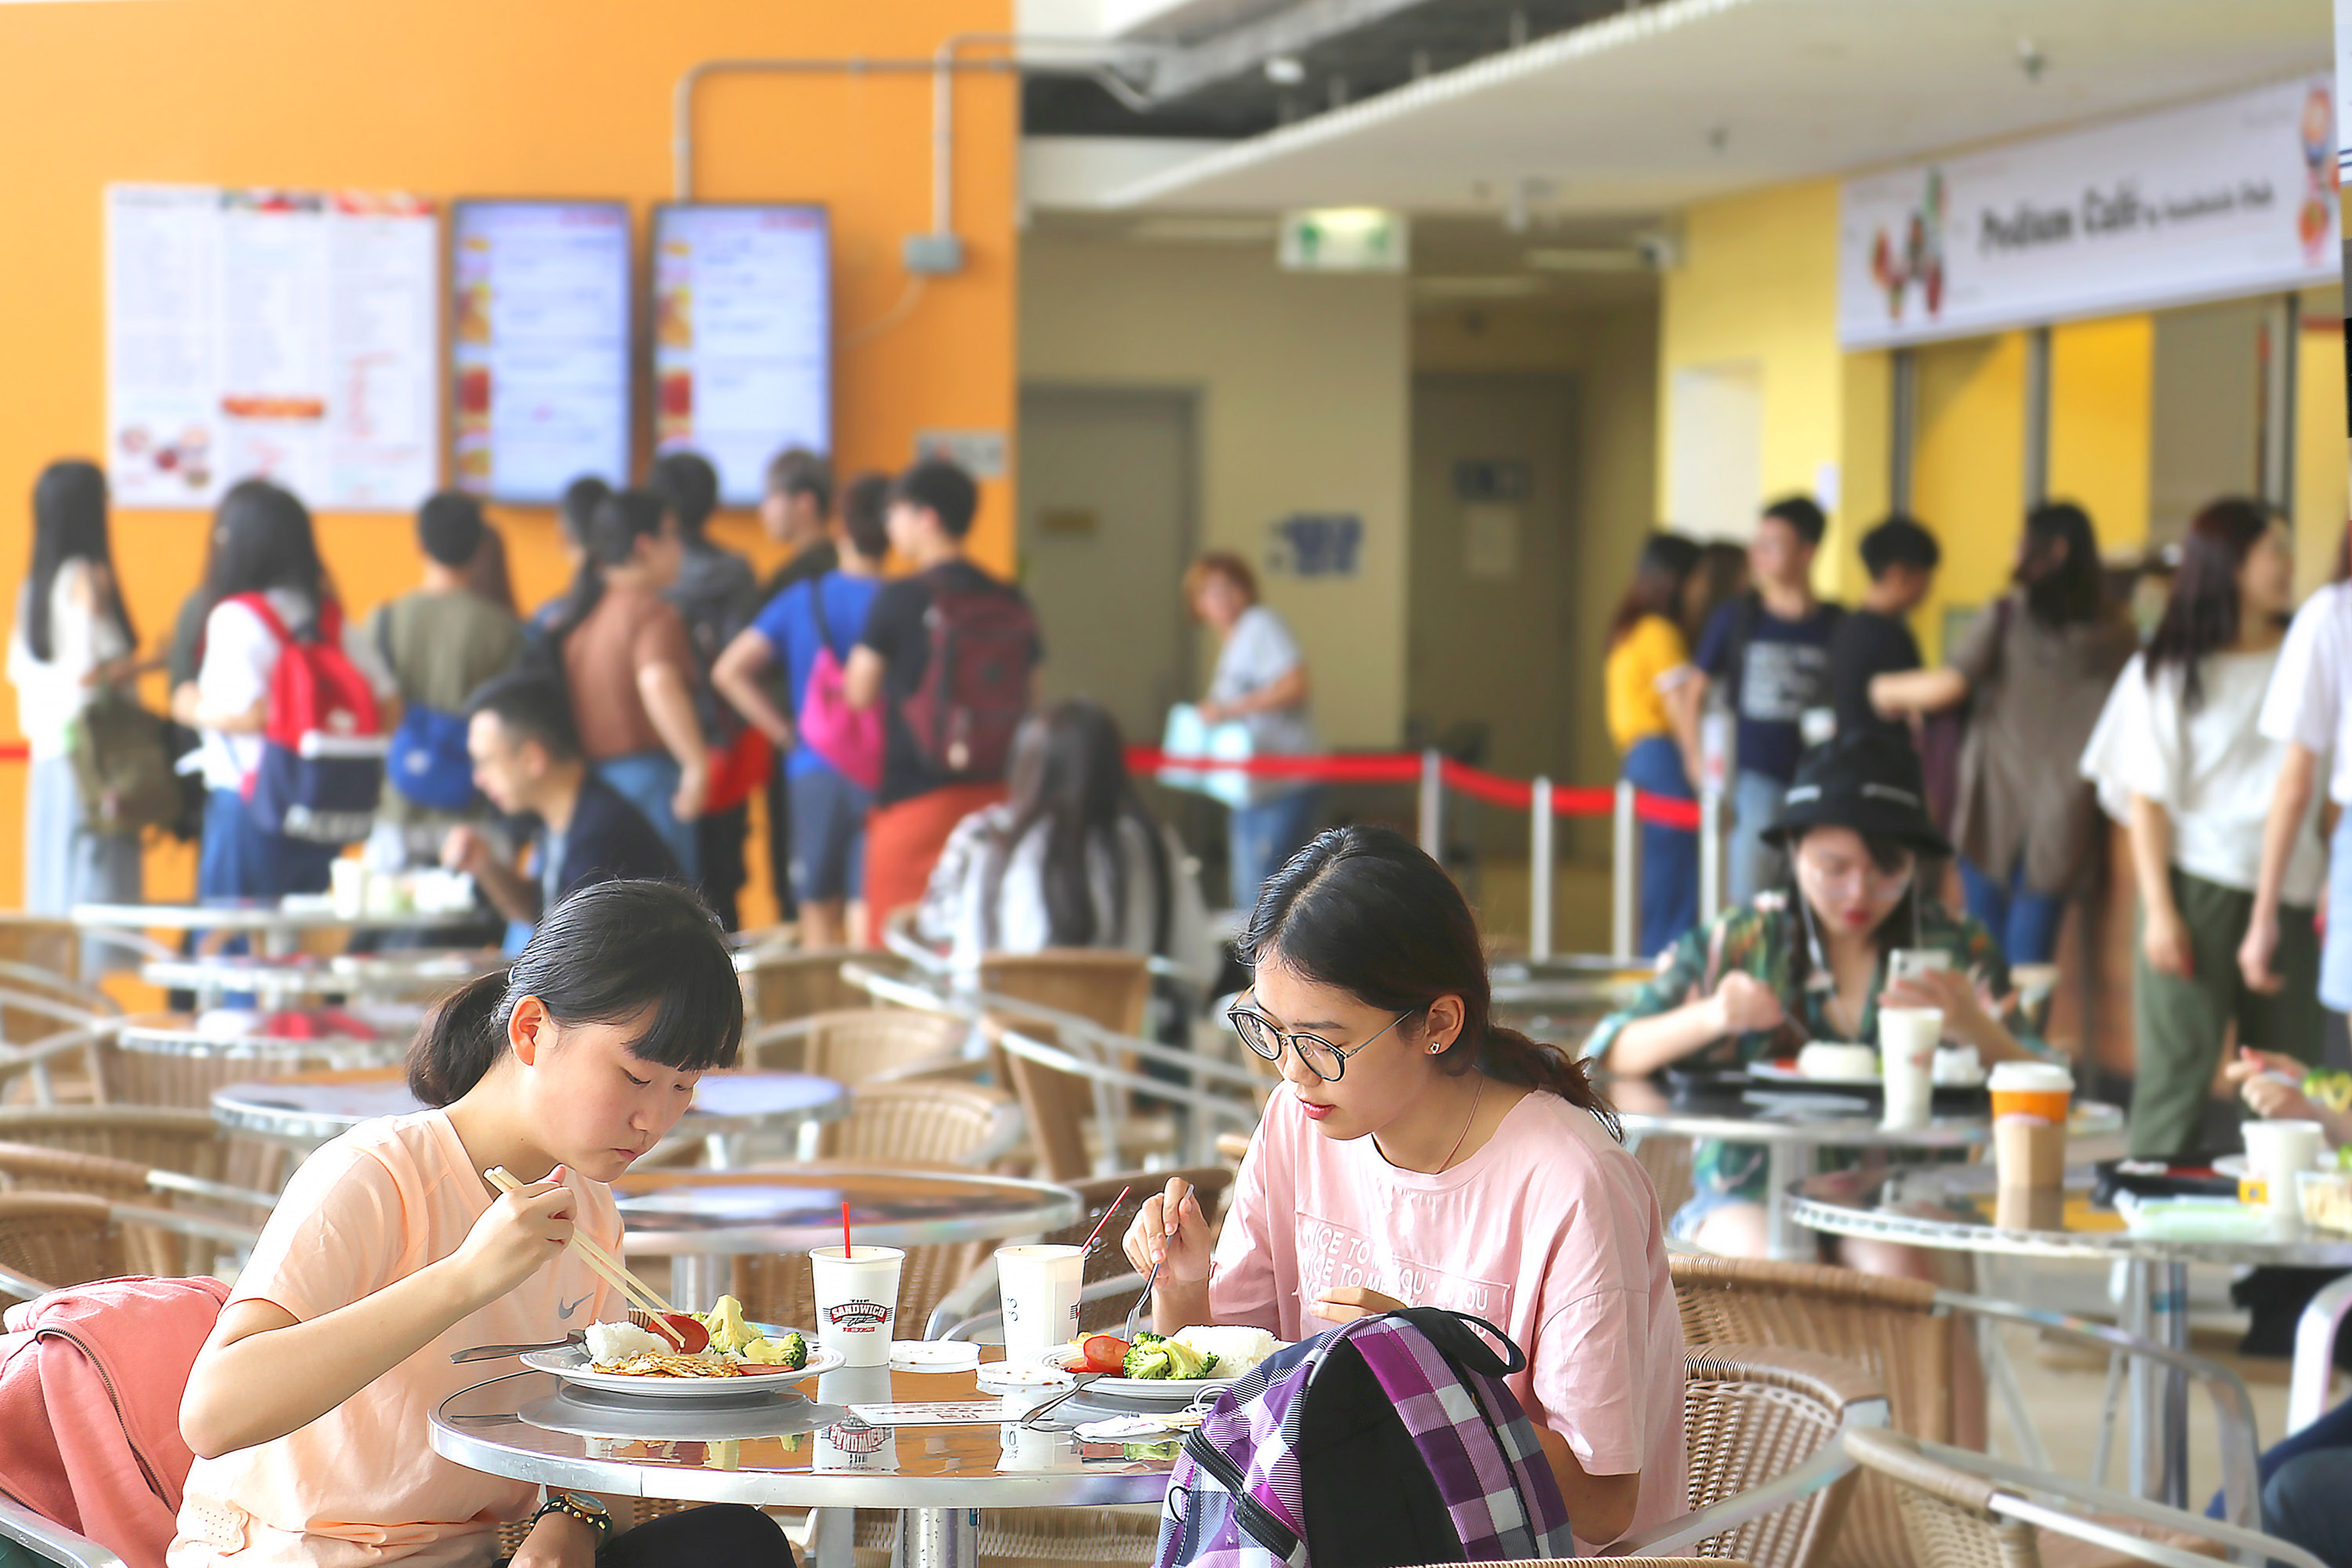 學院於「平台咖啡閣」側提供桌子及椅子予同學方便用膳。